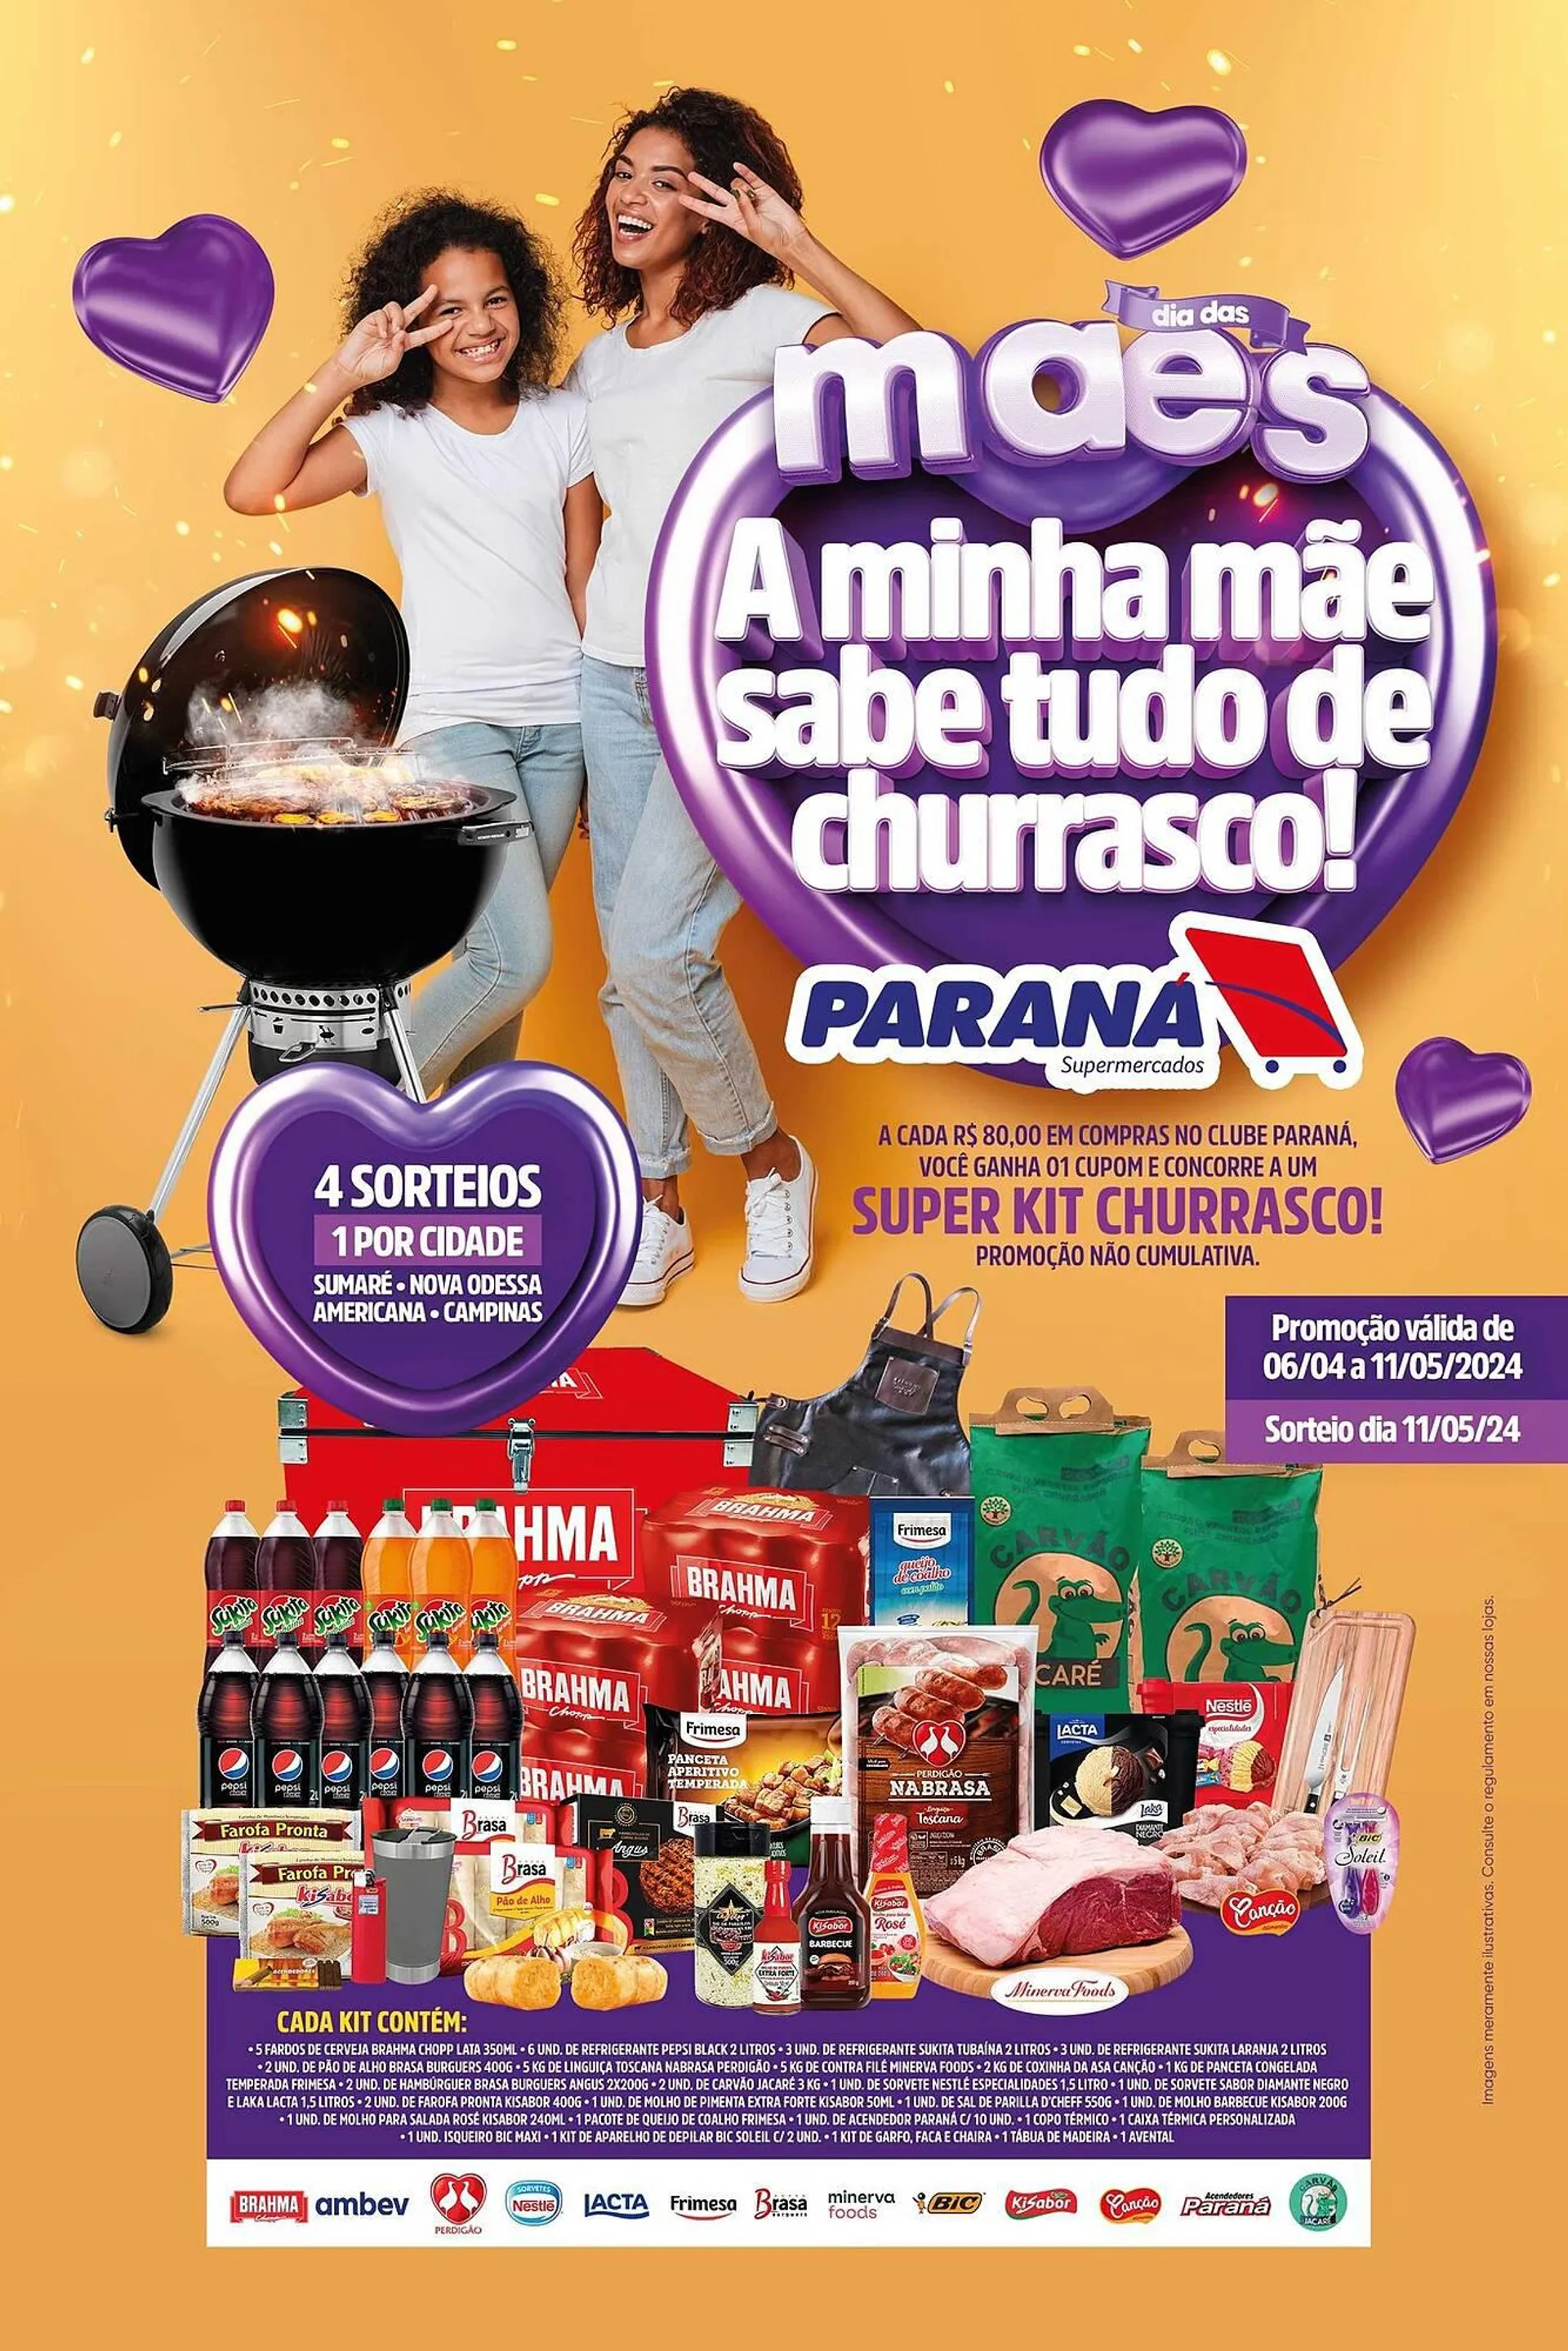 Encarte de Catálogo Supermercado Paraná 6 de abril até 11 de maio 2024 - Pagina 